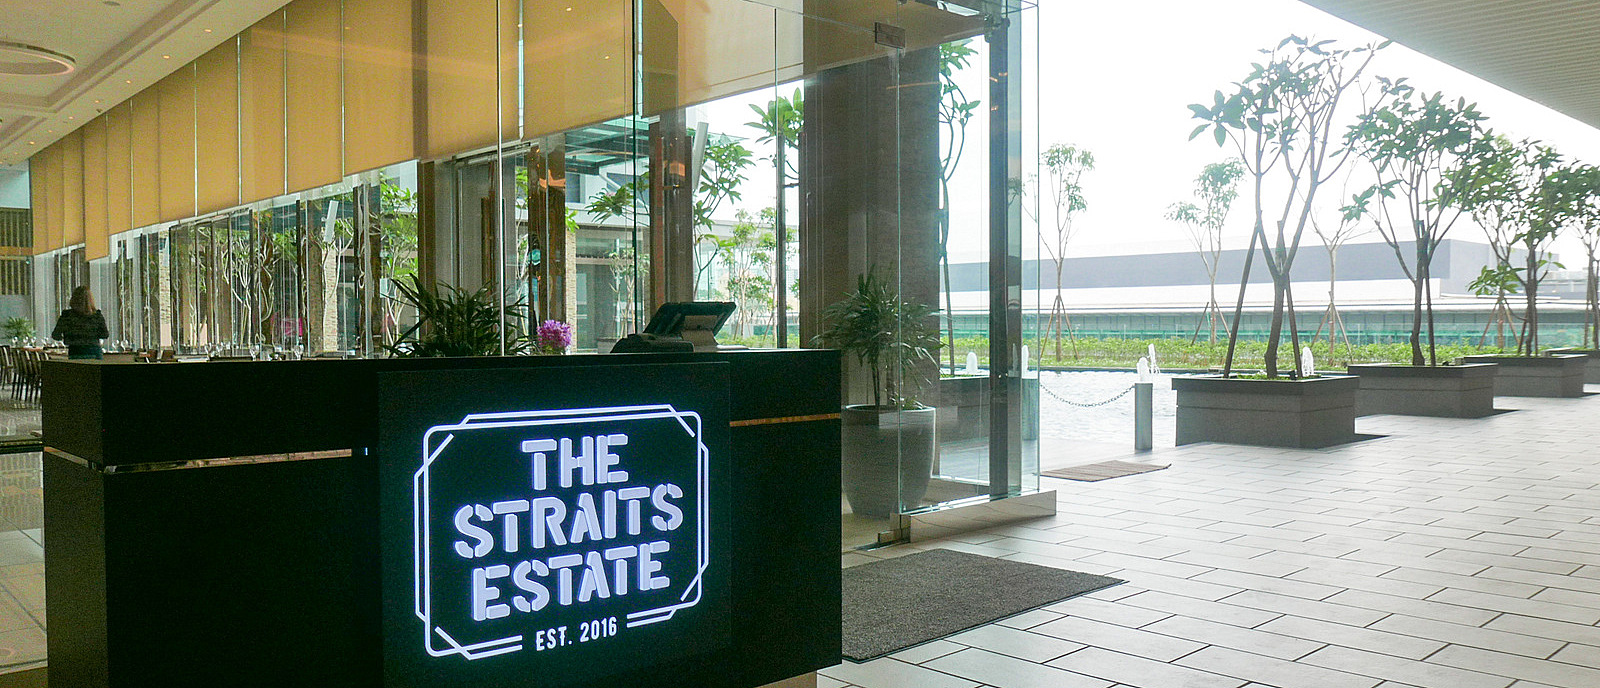 1. The Straits Estate